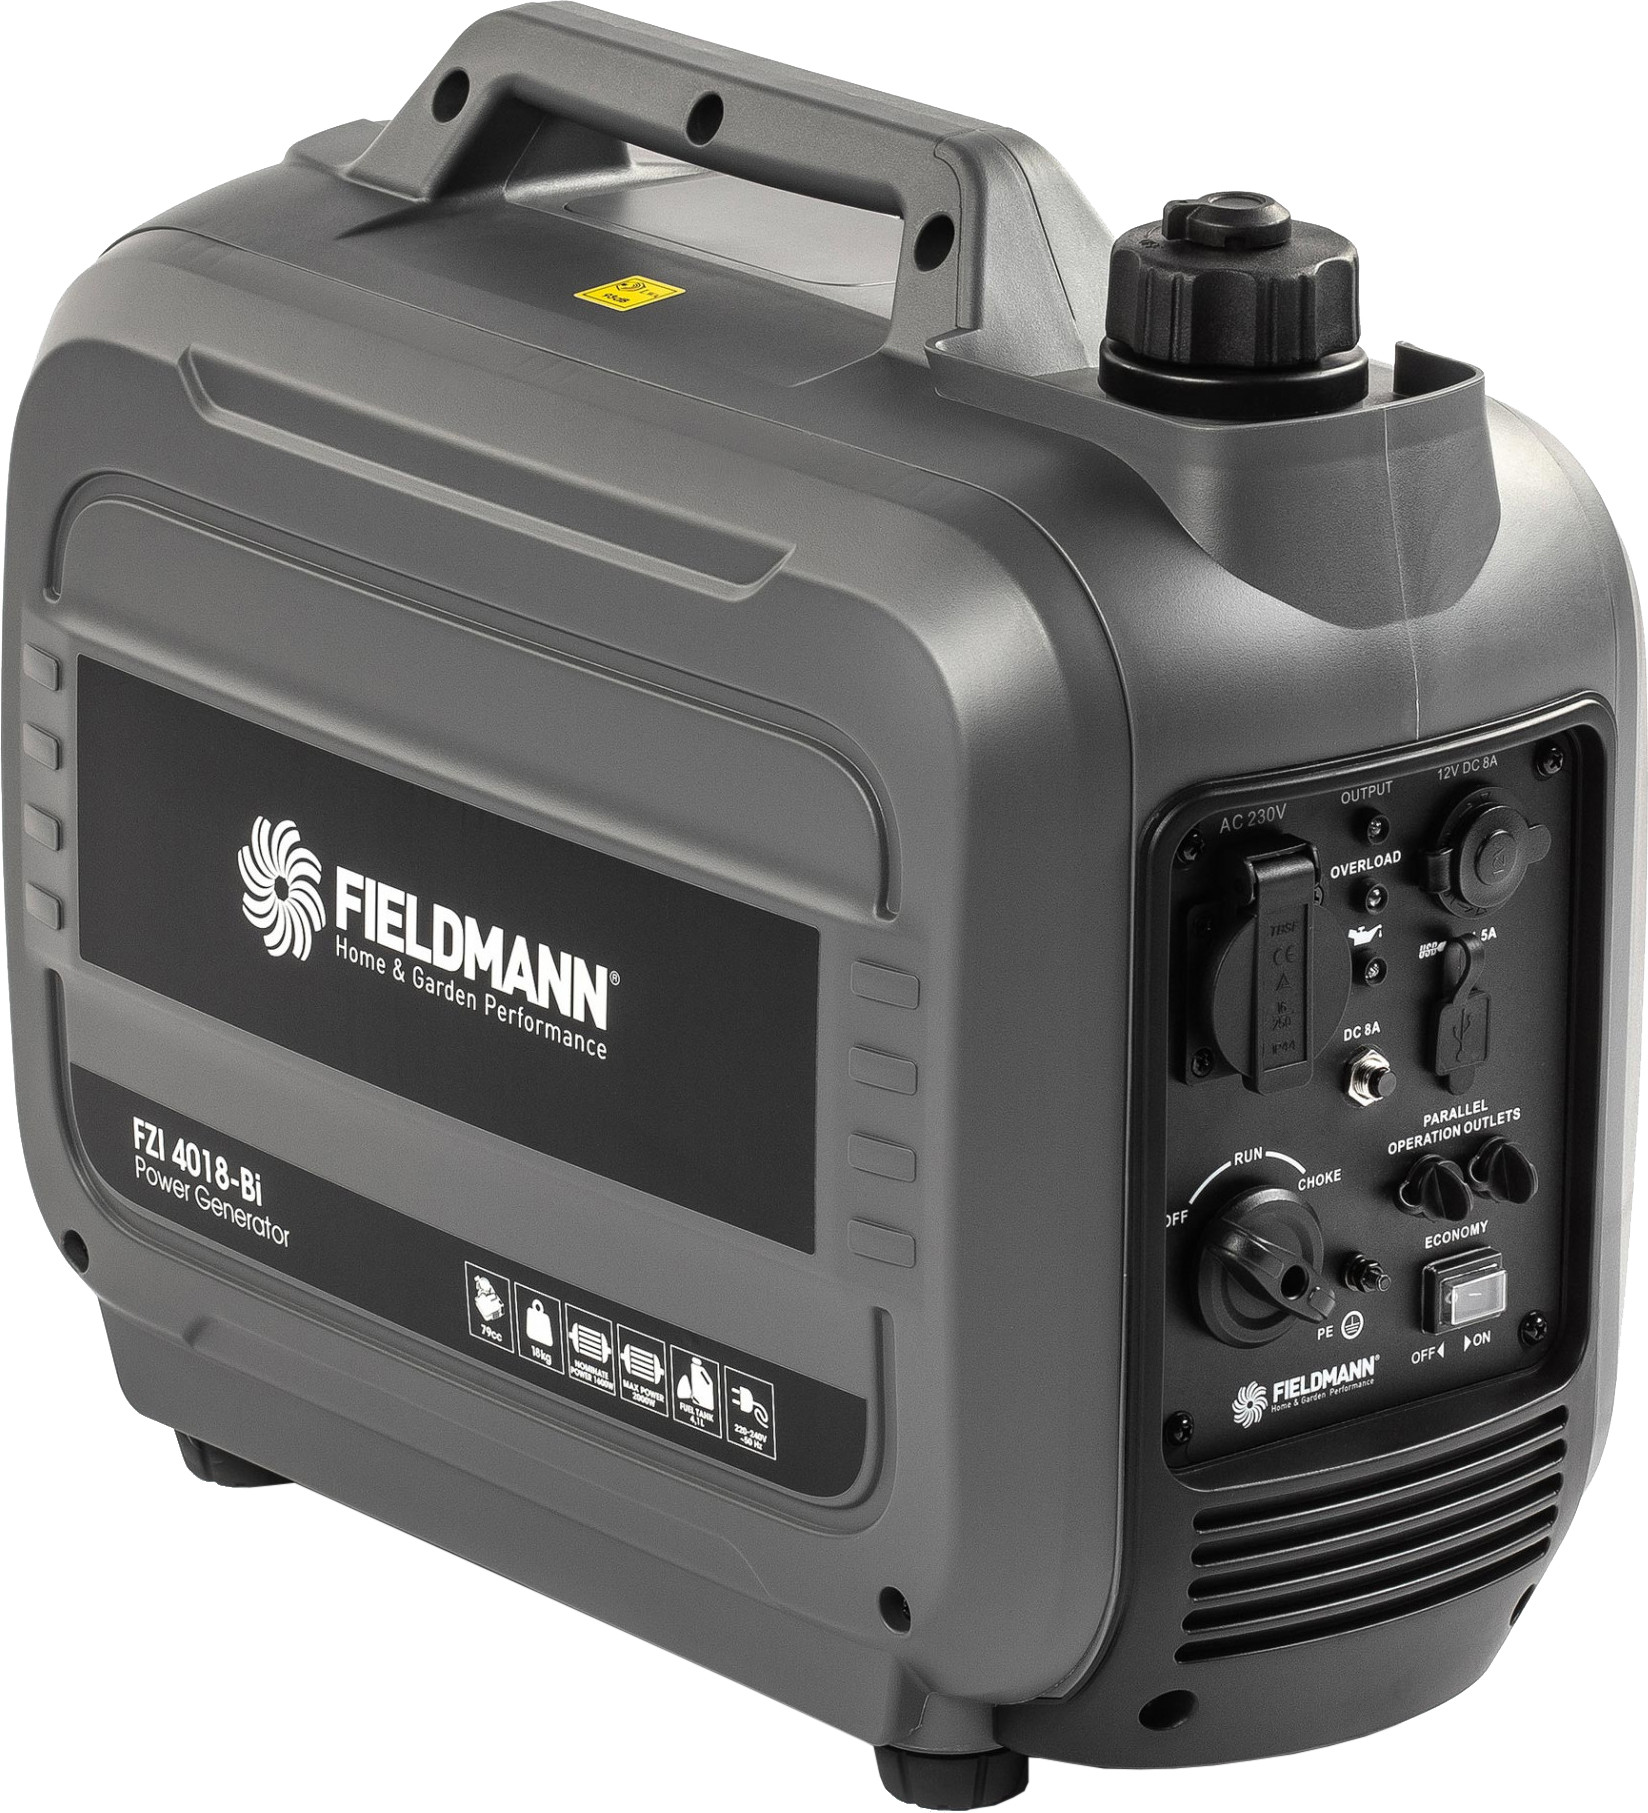 Fieldmann FZI 4018-Bi - зображення 1